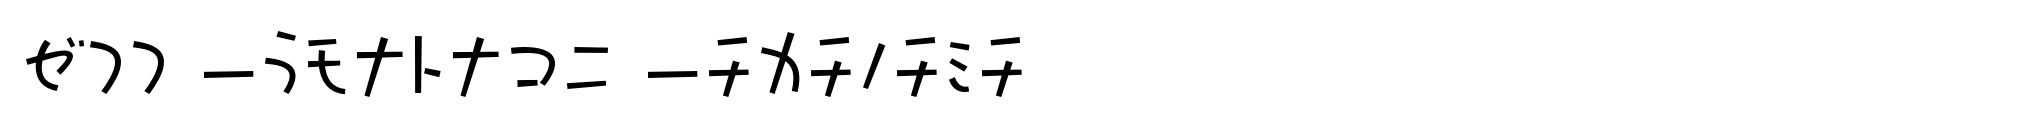 P22 Komusubi Katakana image